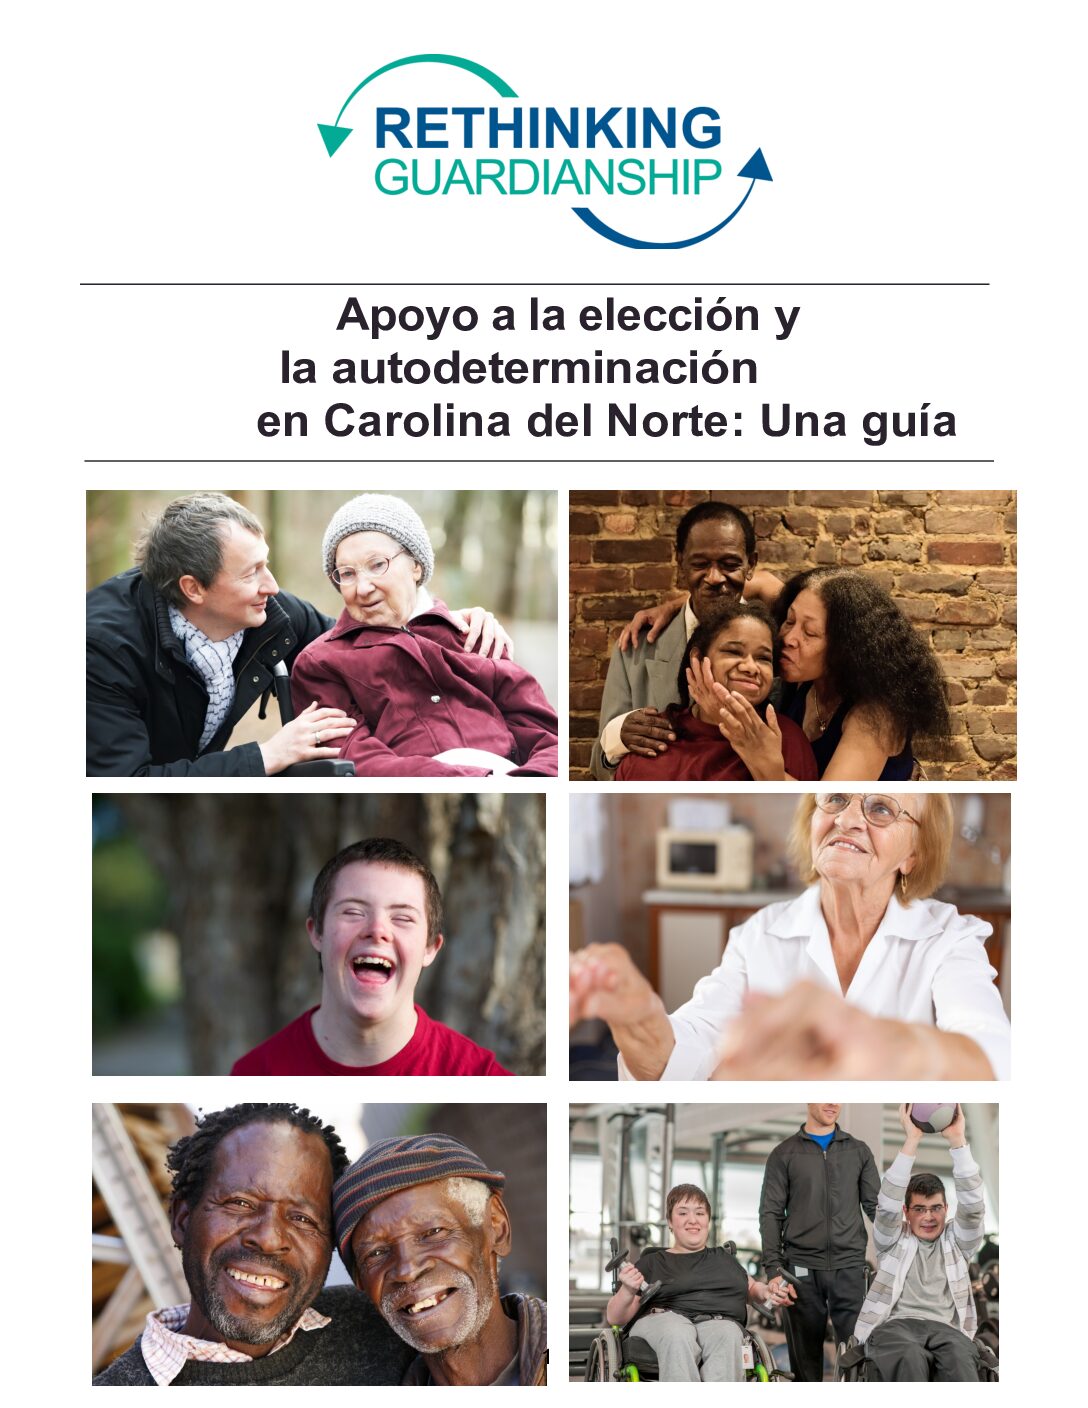 Rethinking Guardianship - Spanish